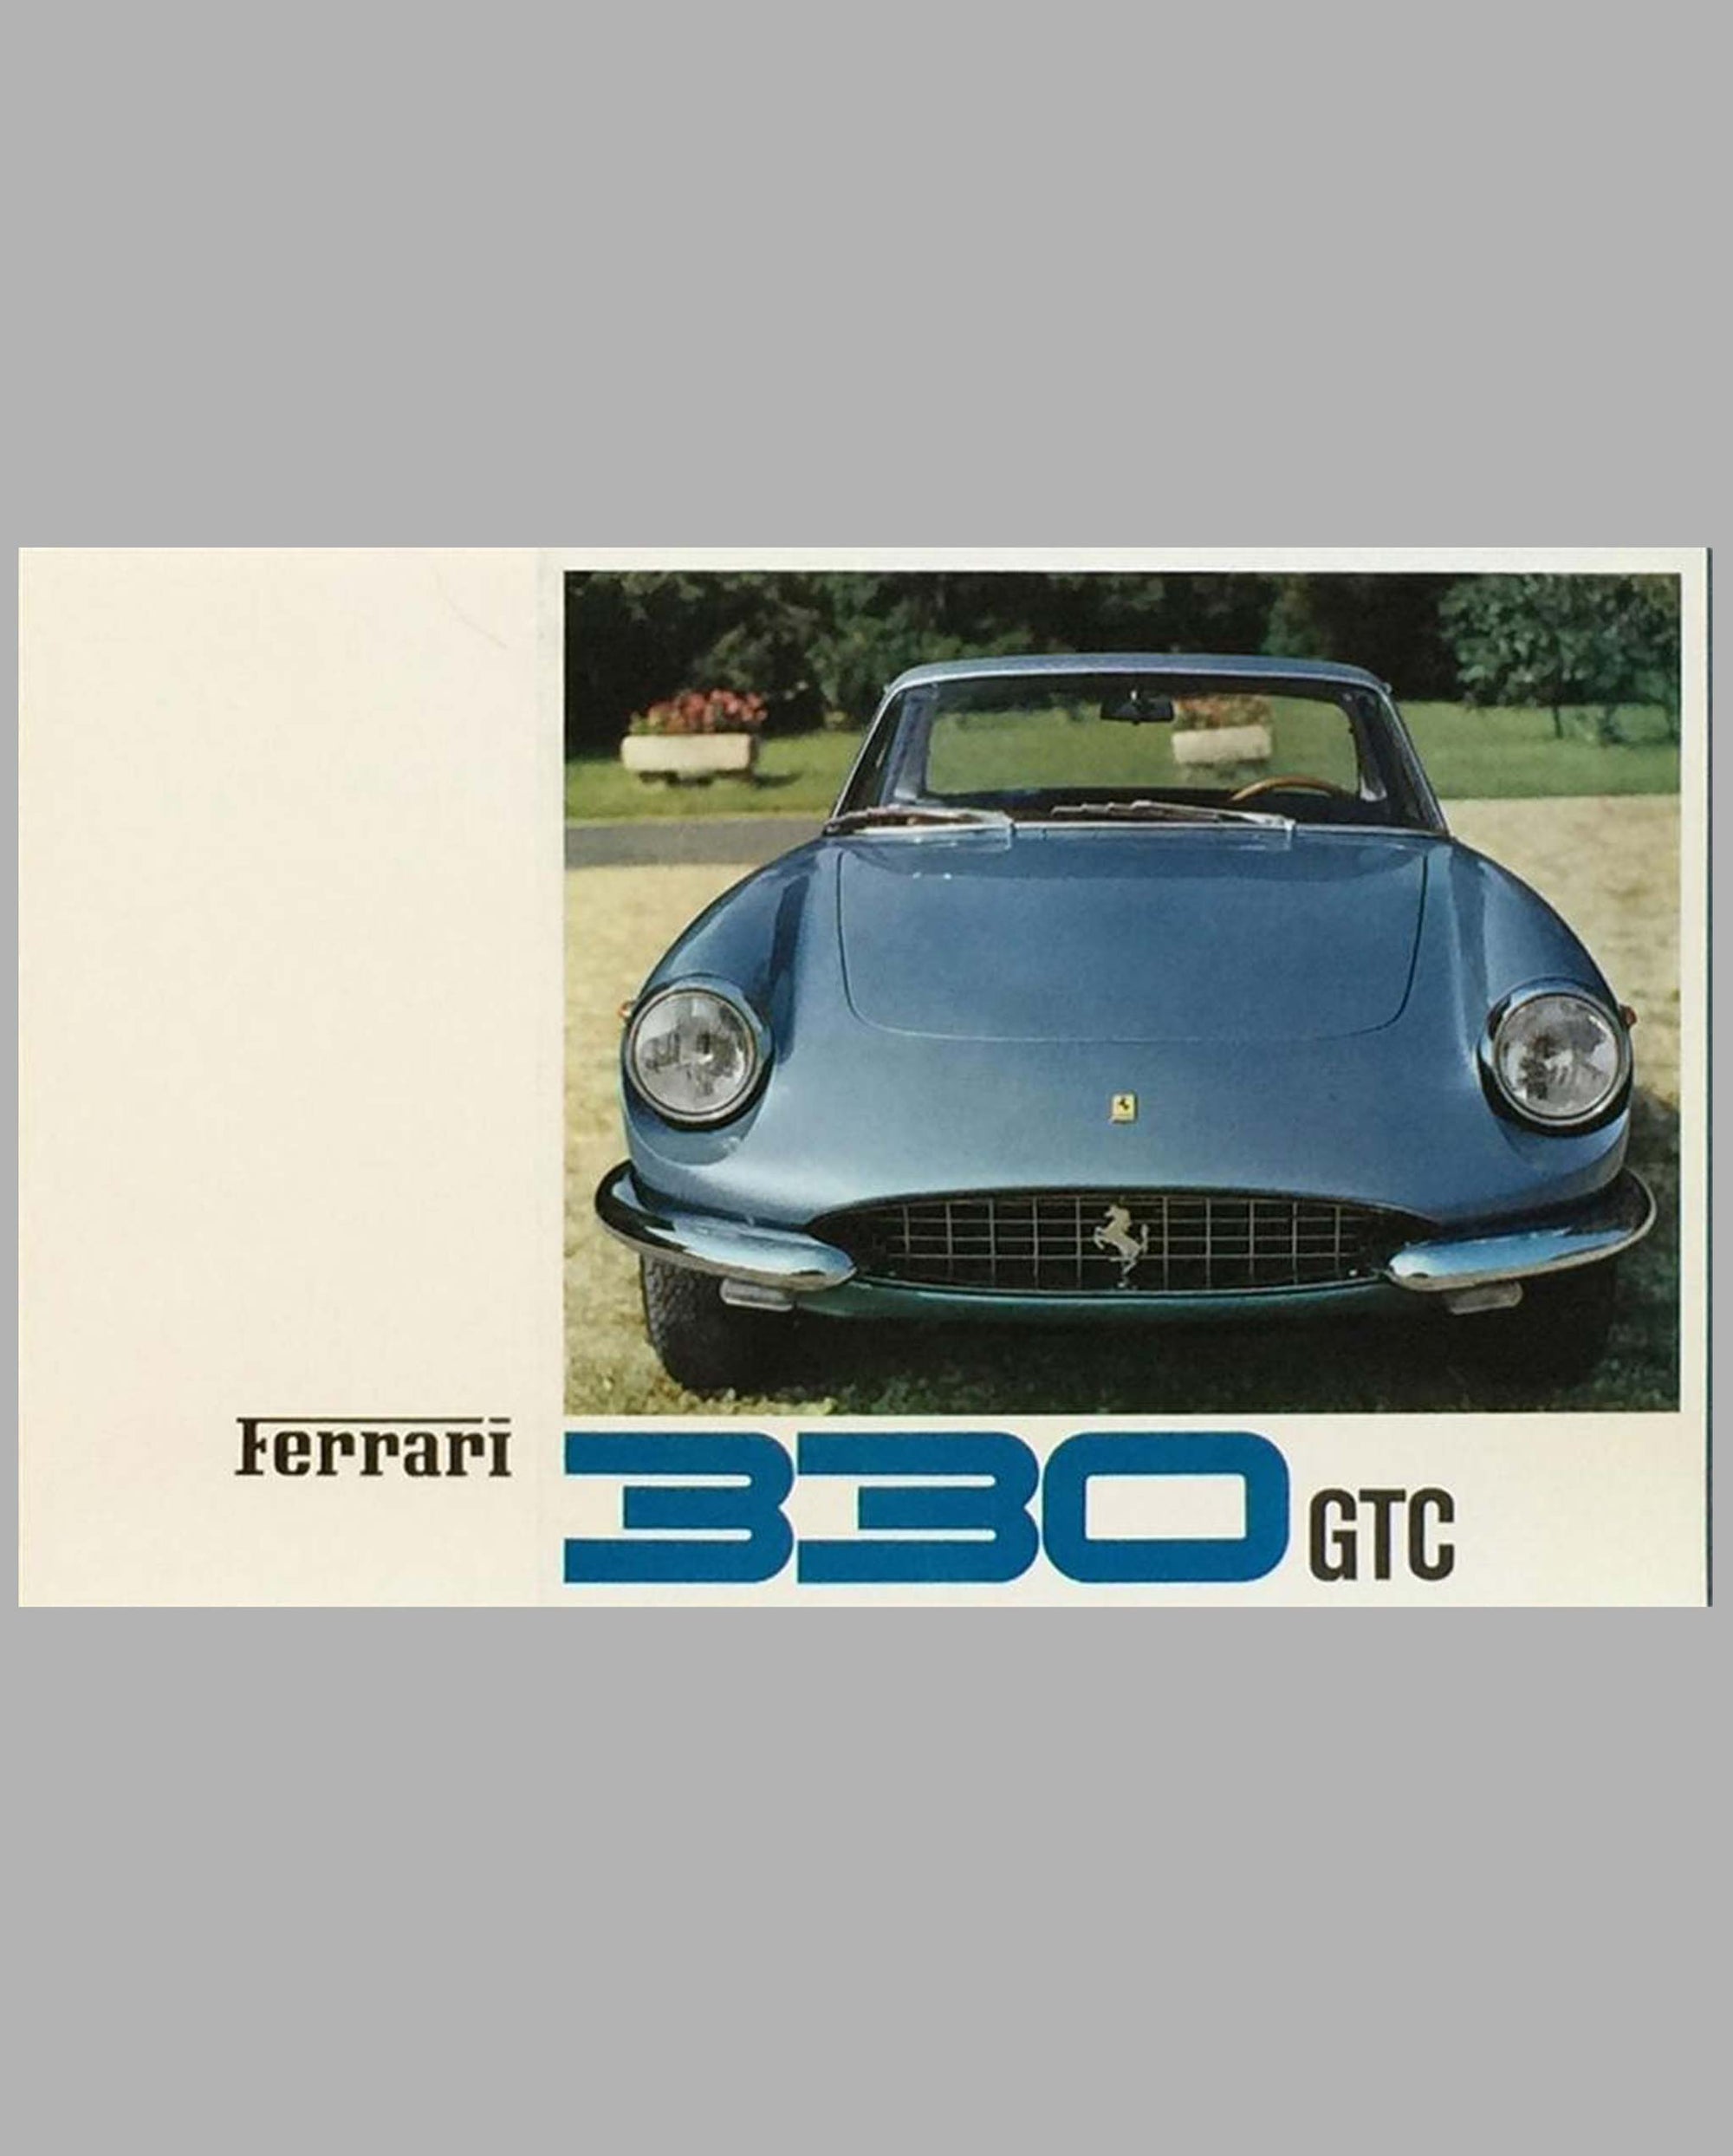 Ferrari 330 GTC original factory brochure